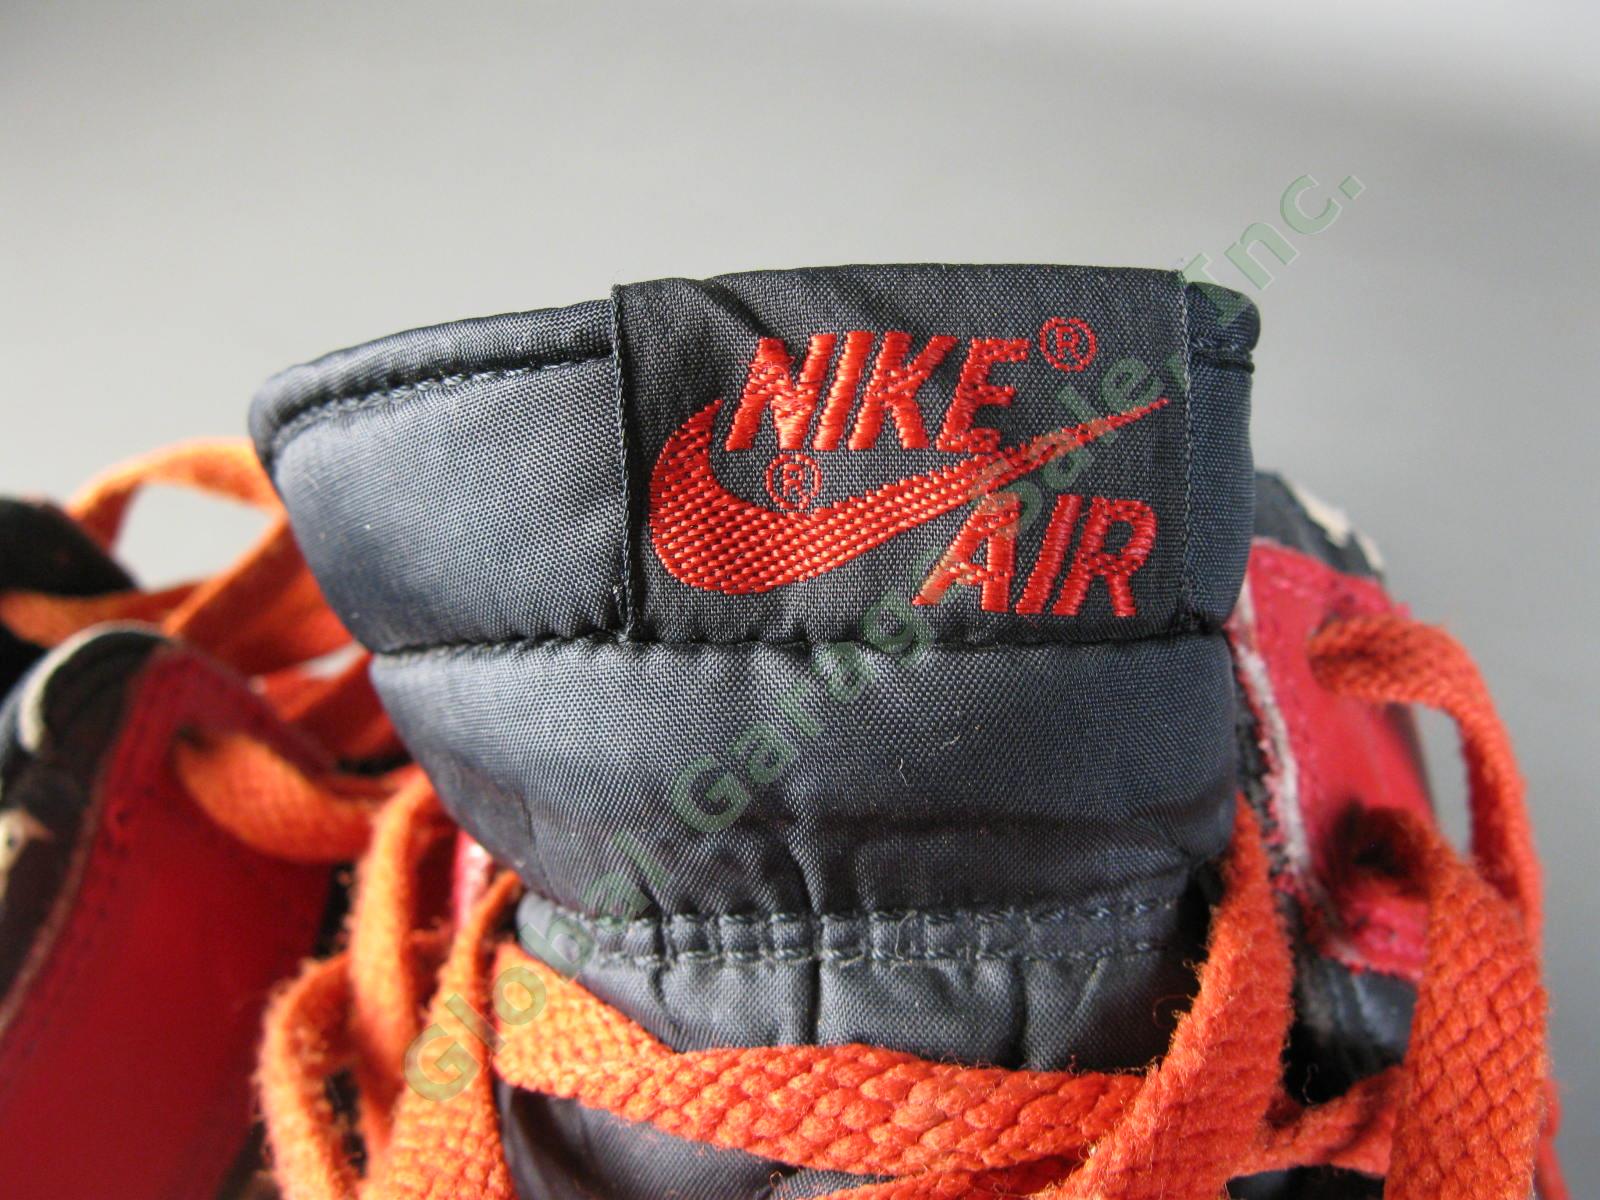 ORIGINAL 1985 Nike Air Jordan 1 Bred Black Red Chicago Bulls BANNED OG MJ AJI NR 7